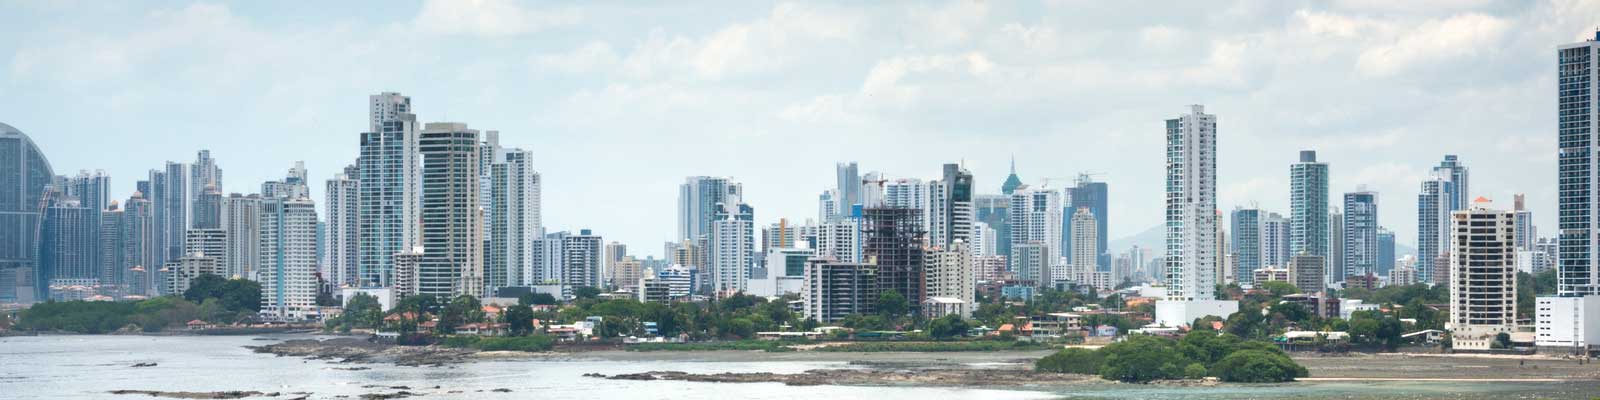 Panama Immobili - Uffici, nuove costruzioni, alberghi - Costruisci, investi, affitta